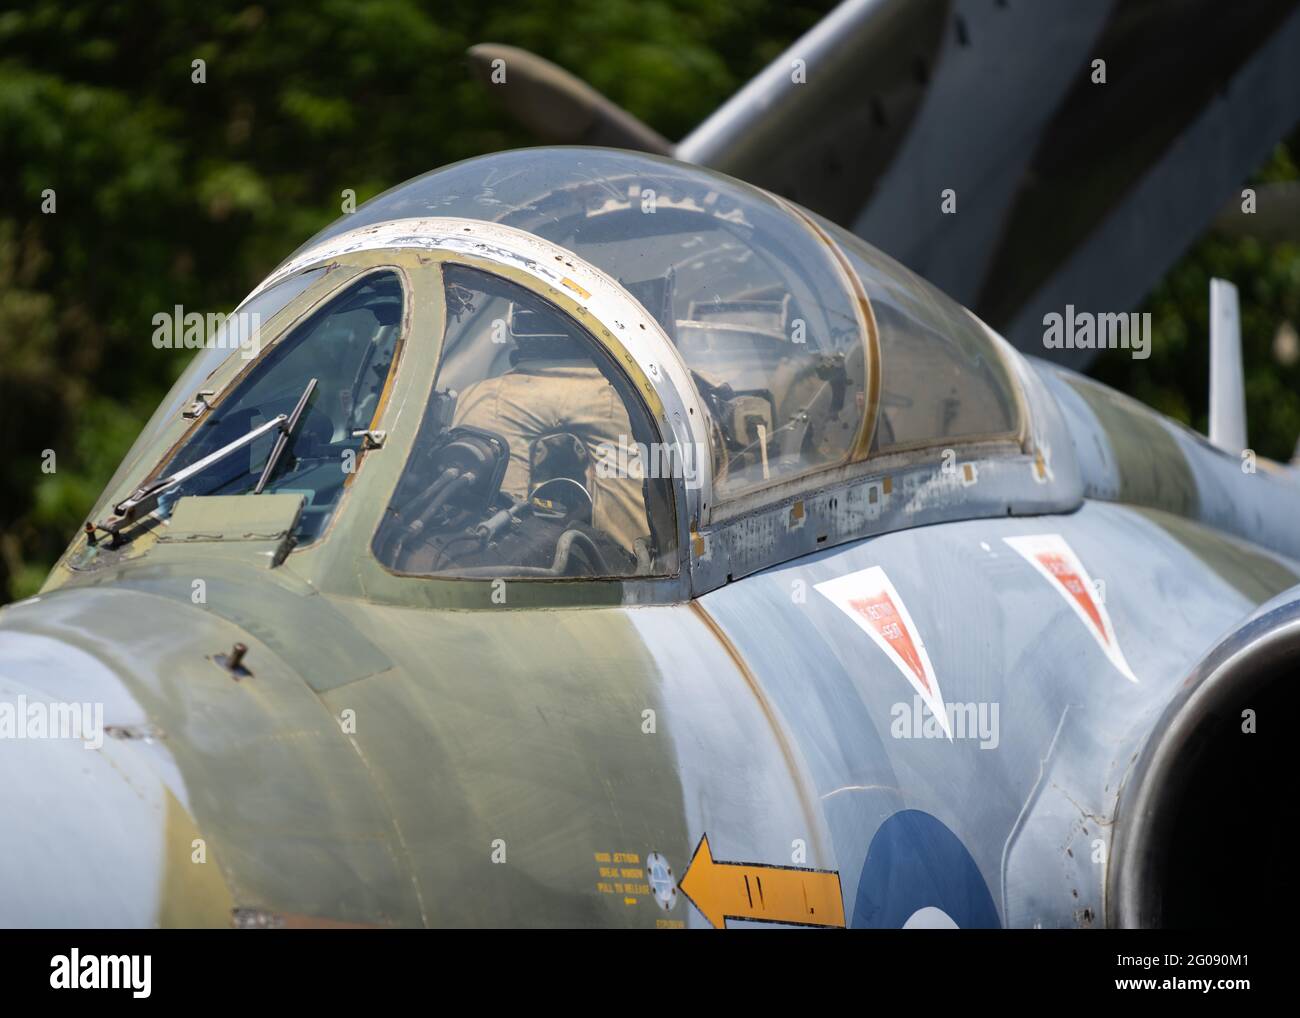 Verlassene alte Buccaneer RAF Kampfjet aus der Ära des Kalten Krieges. Faltflügel für den Einsatz auf Flugzeugträger Fokus Cockpit Piloten Sitz mit Jet-Motoren Stockfoto